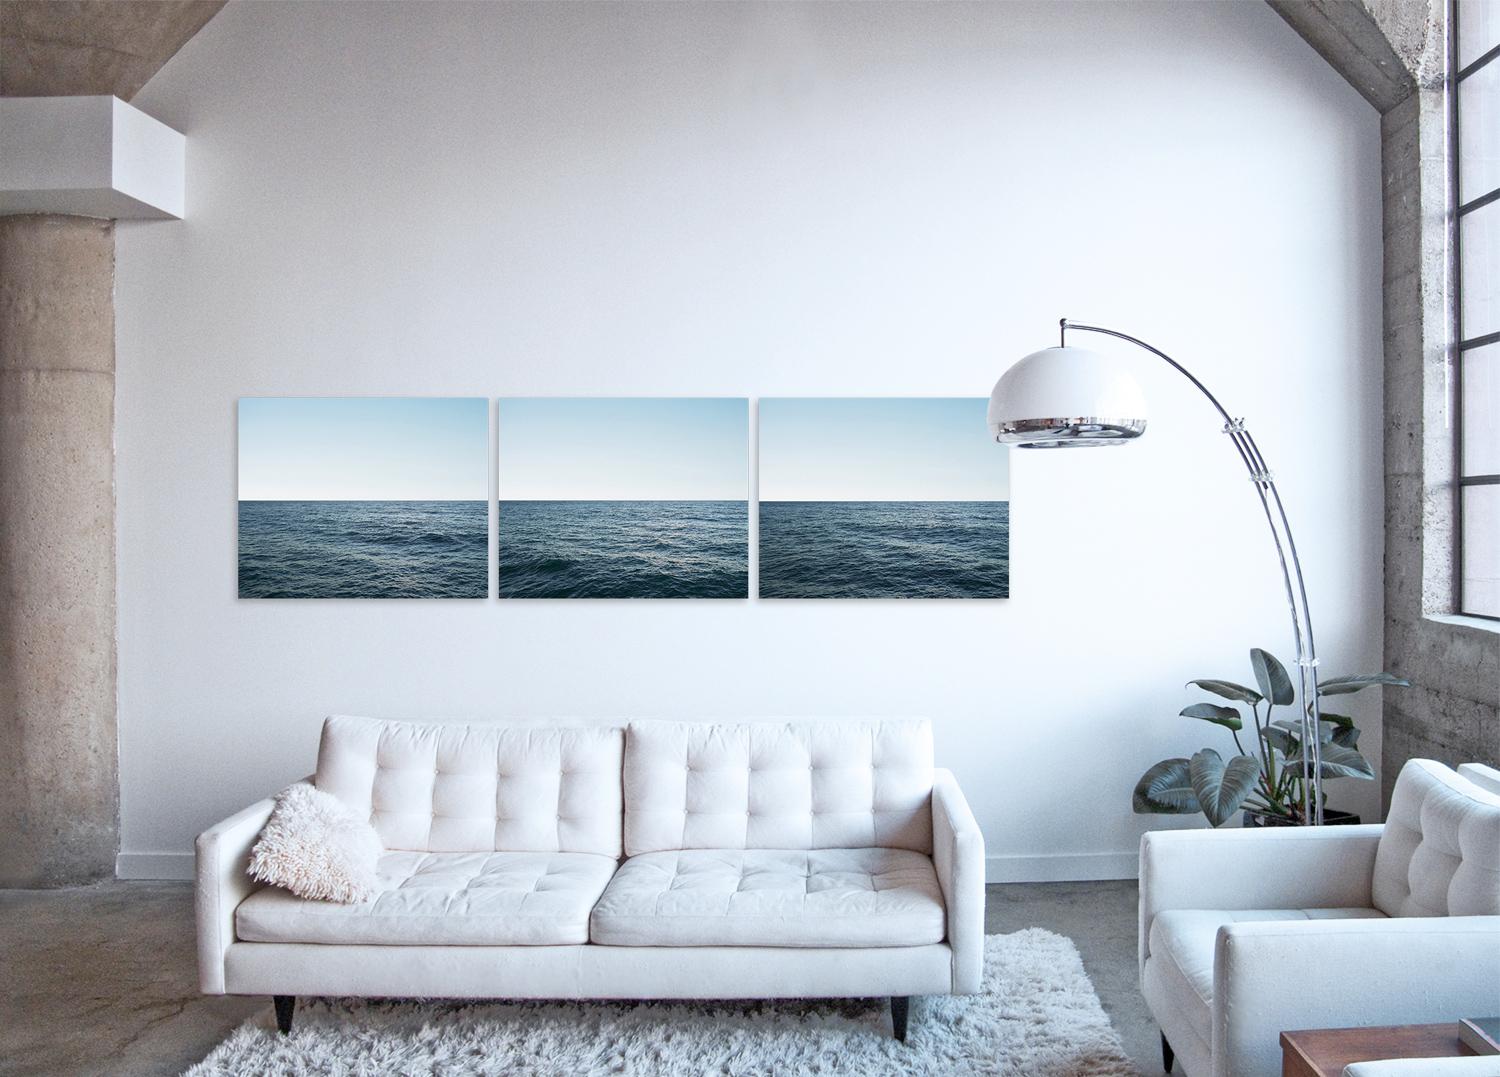 Faszinierende großformatige Fotografie aus der Seascape-Serie des Künstlers, einer Reihe von Werken, die die taktilen Oberflächen und die monochromatische Natur des Meeres und der Wolkenlandschaften einfangen

Seestück XI - Triptychon von Frank